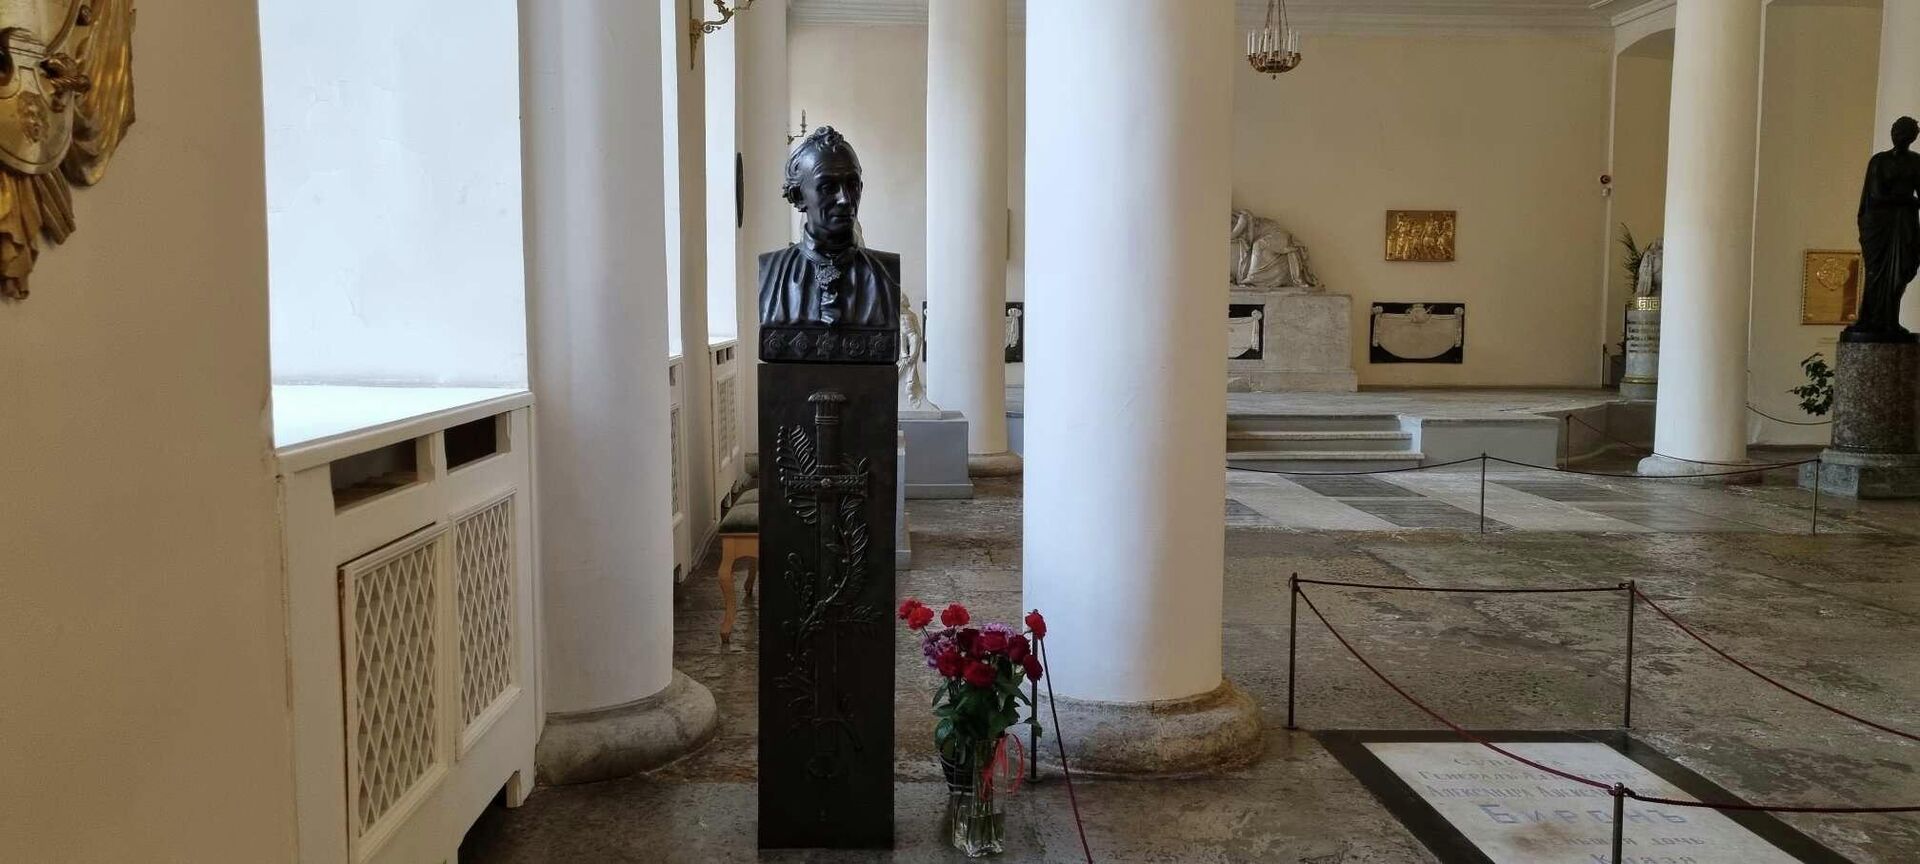 U kripti crkve su grobnice mnogih članova carske porodice, diplomata i vojskovođa. - Sputnik Srbija, 1920, 12.12.2021